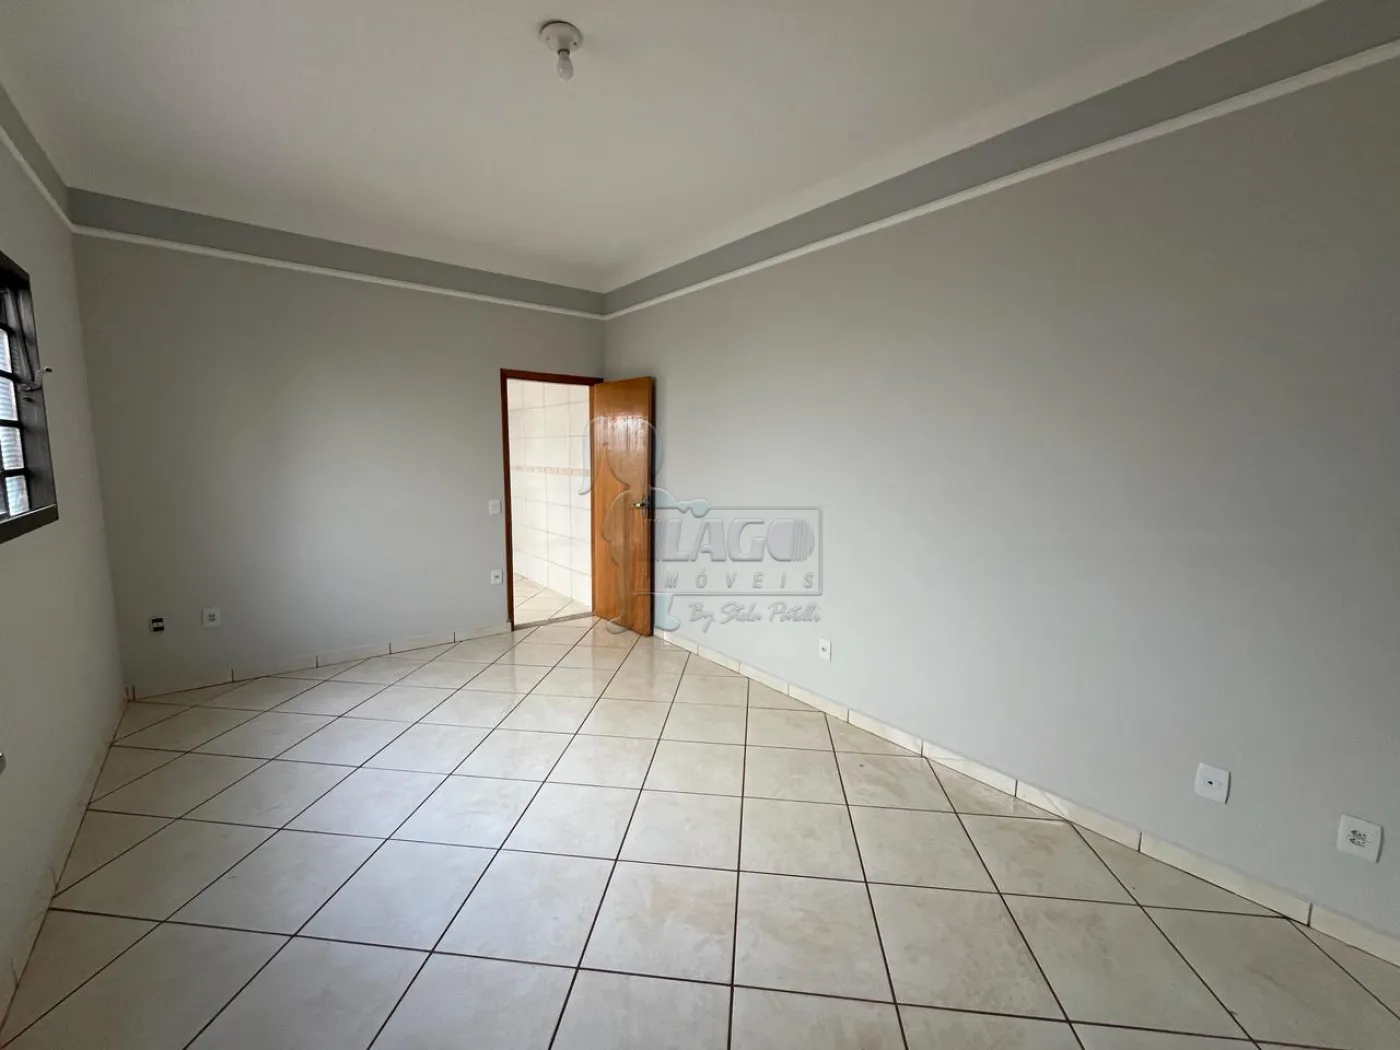 Comprar Casa / Padrão em Ribeirão Preto R$ 370.000,00 - Foto 3